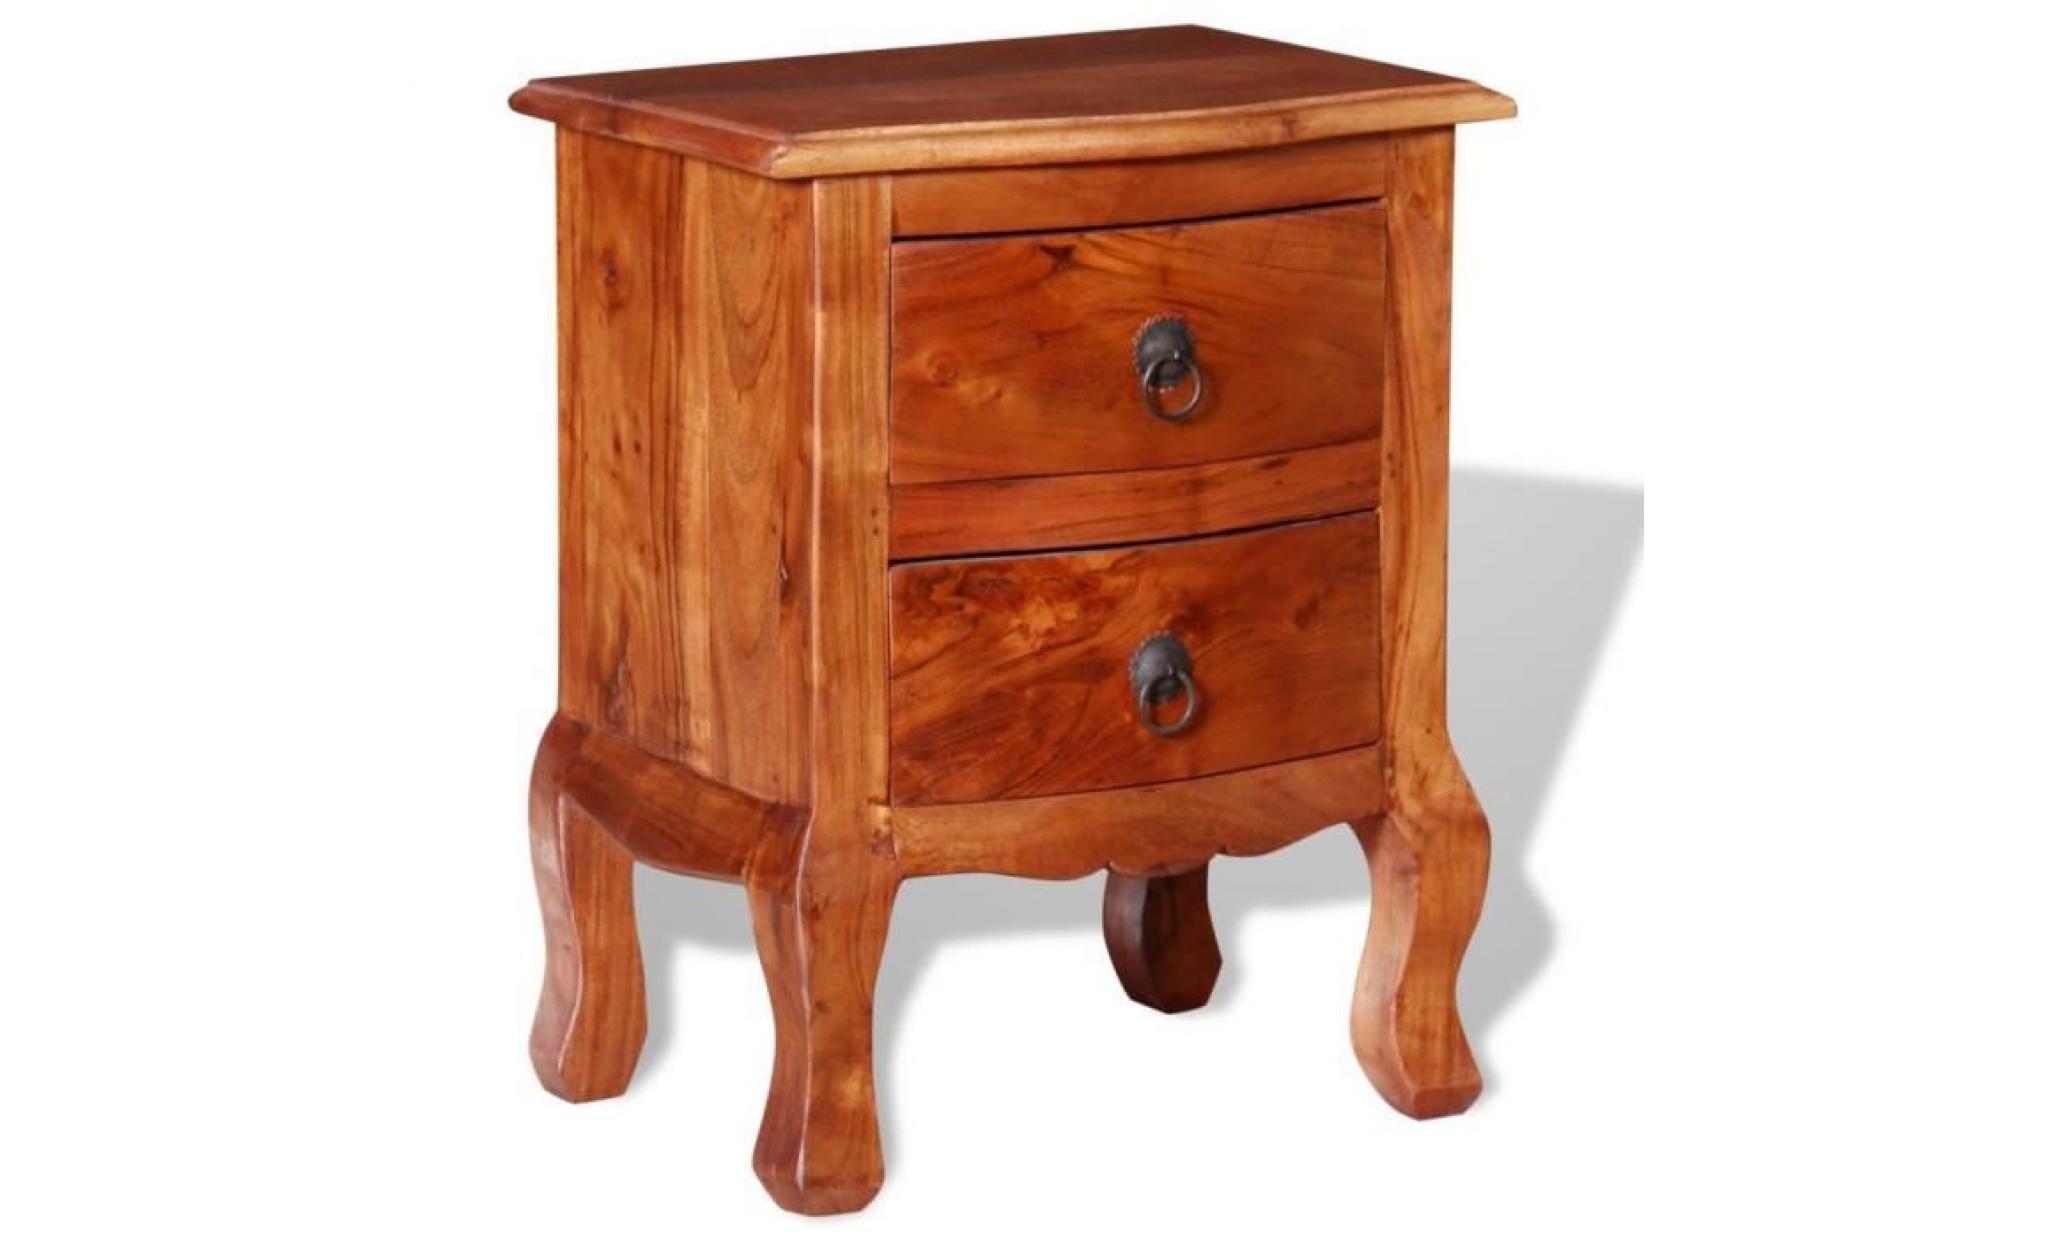 table de chevet en bois d'acacia massif avec un vernis mat ajoutera une touche de charme vintage à votre décor. la table de chevet pas cher